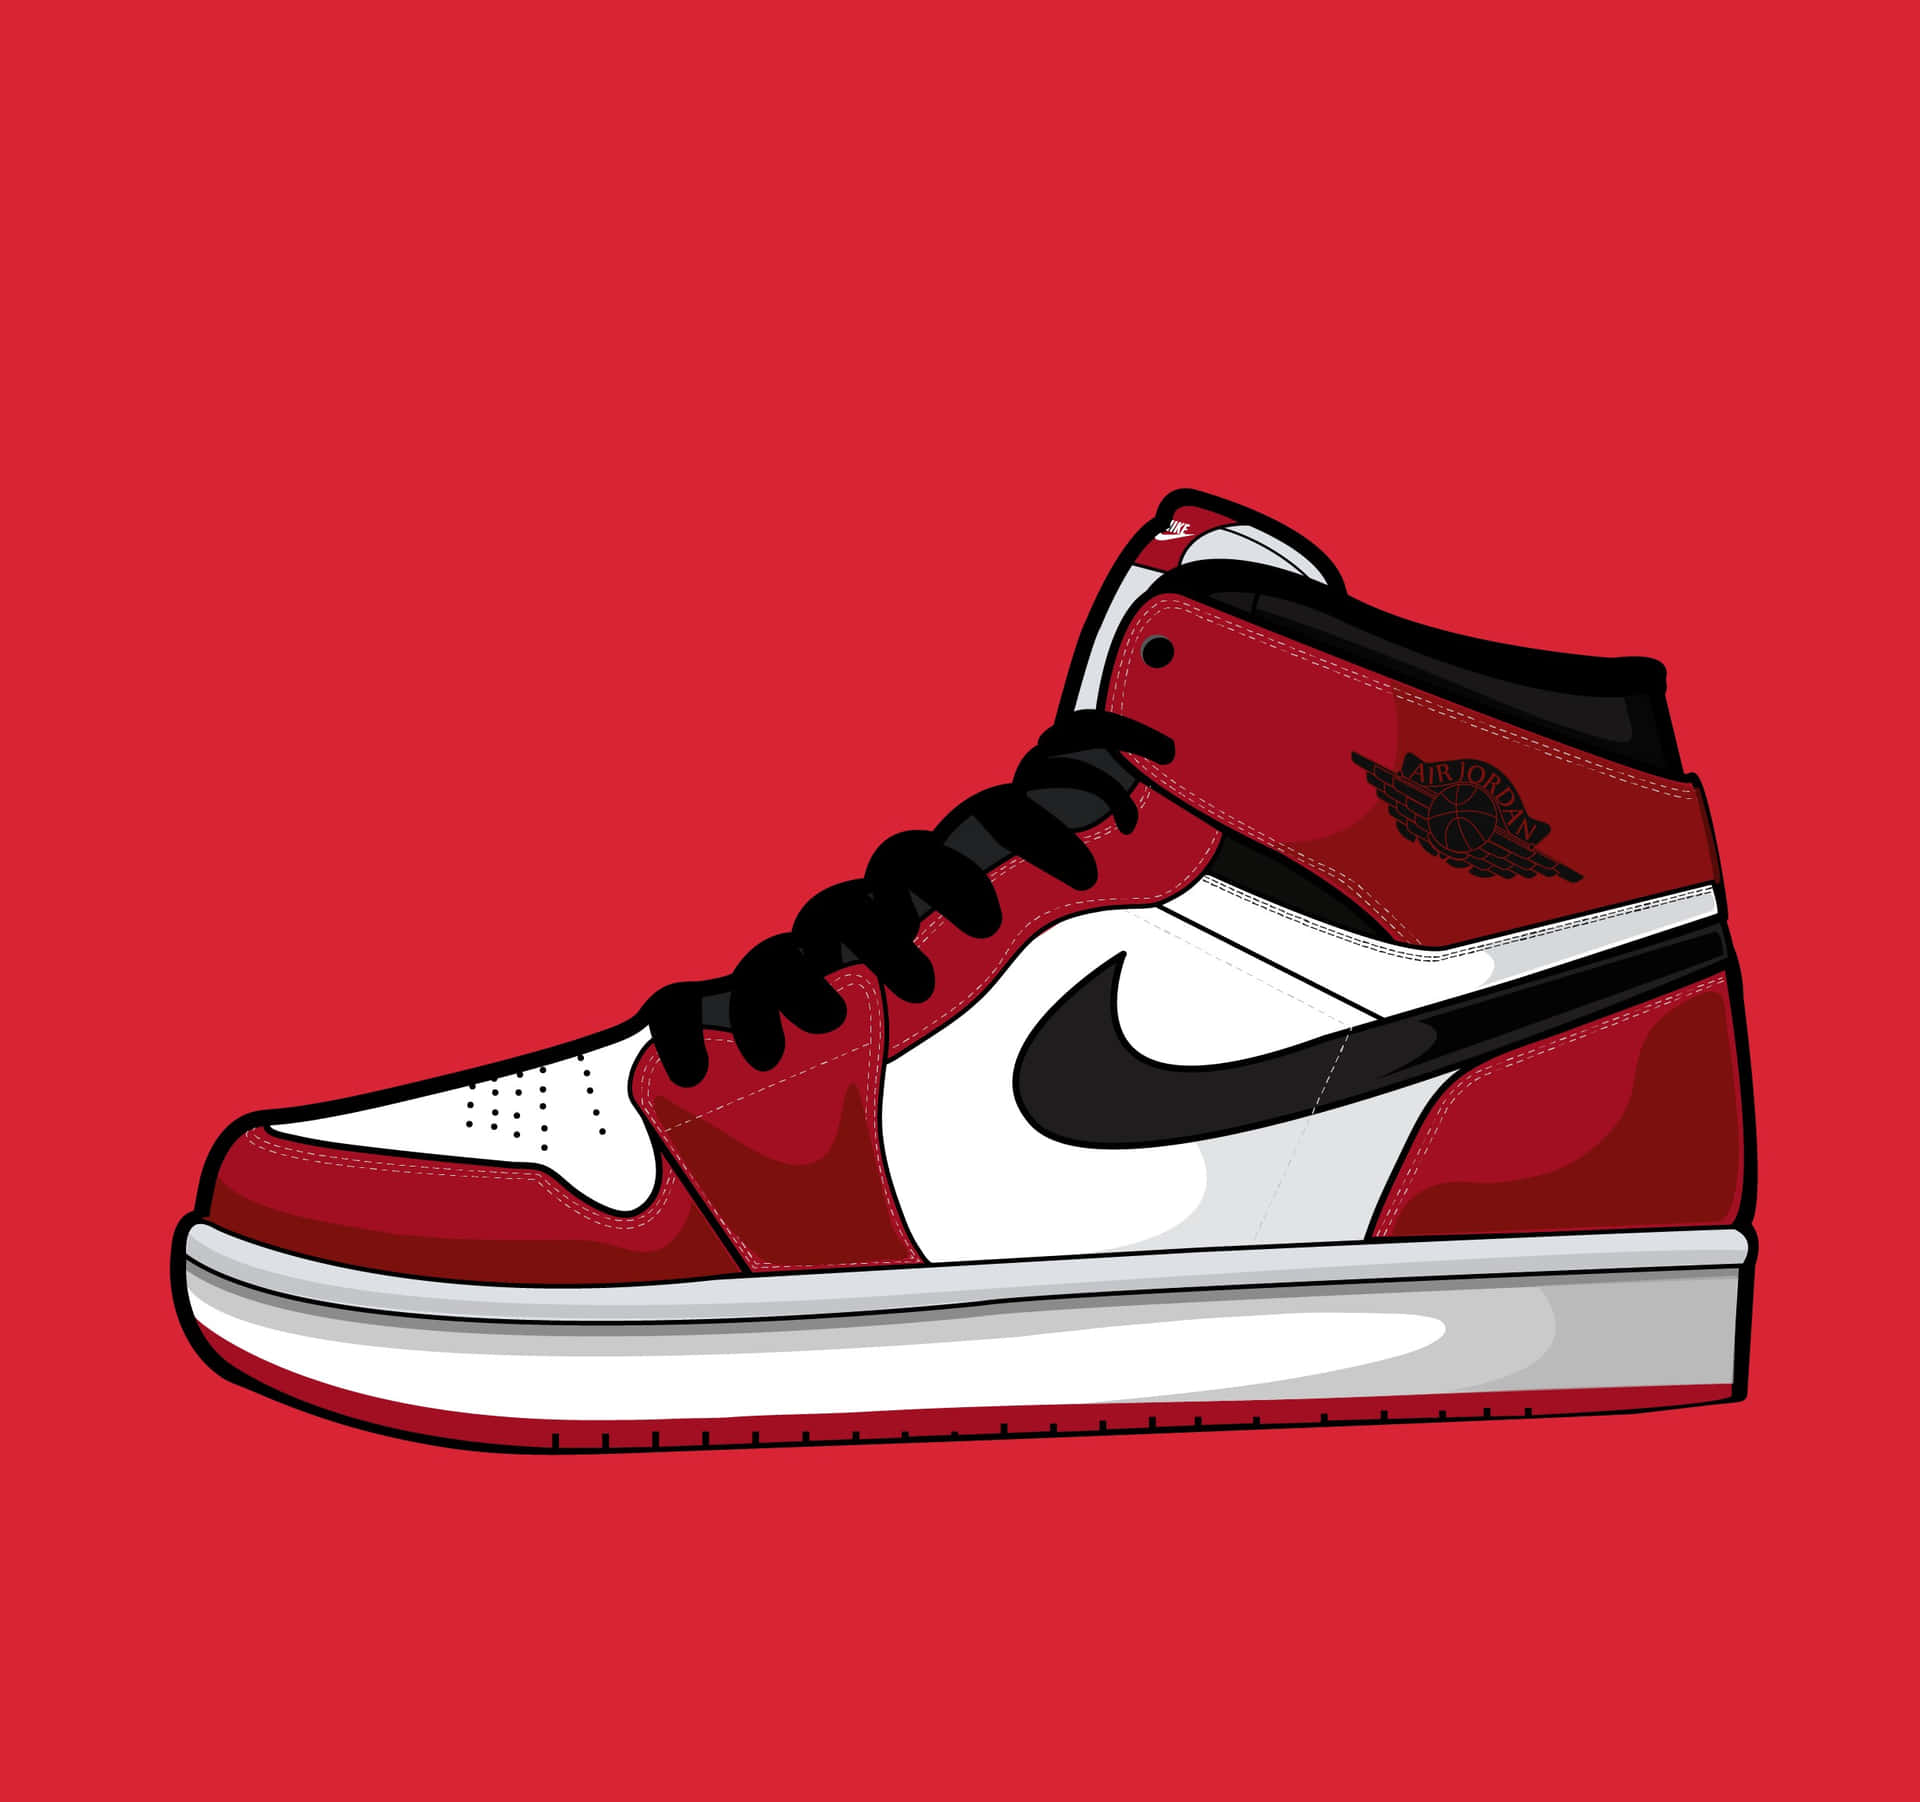 Einroter Und Weißer Nike Air Jordan 1 Auf Einem Roten Hintergrund. Wallpaper